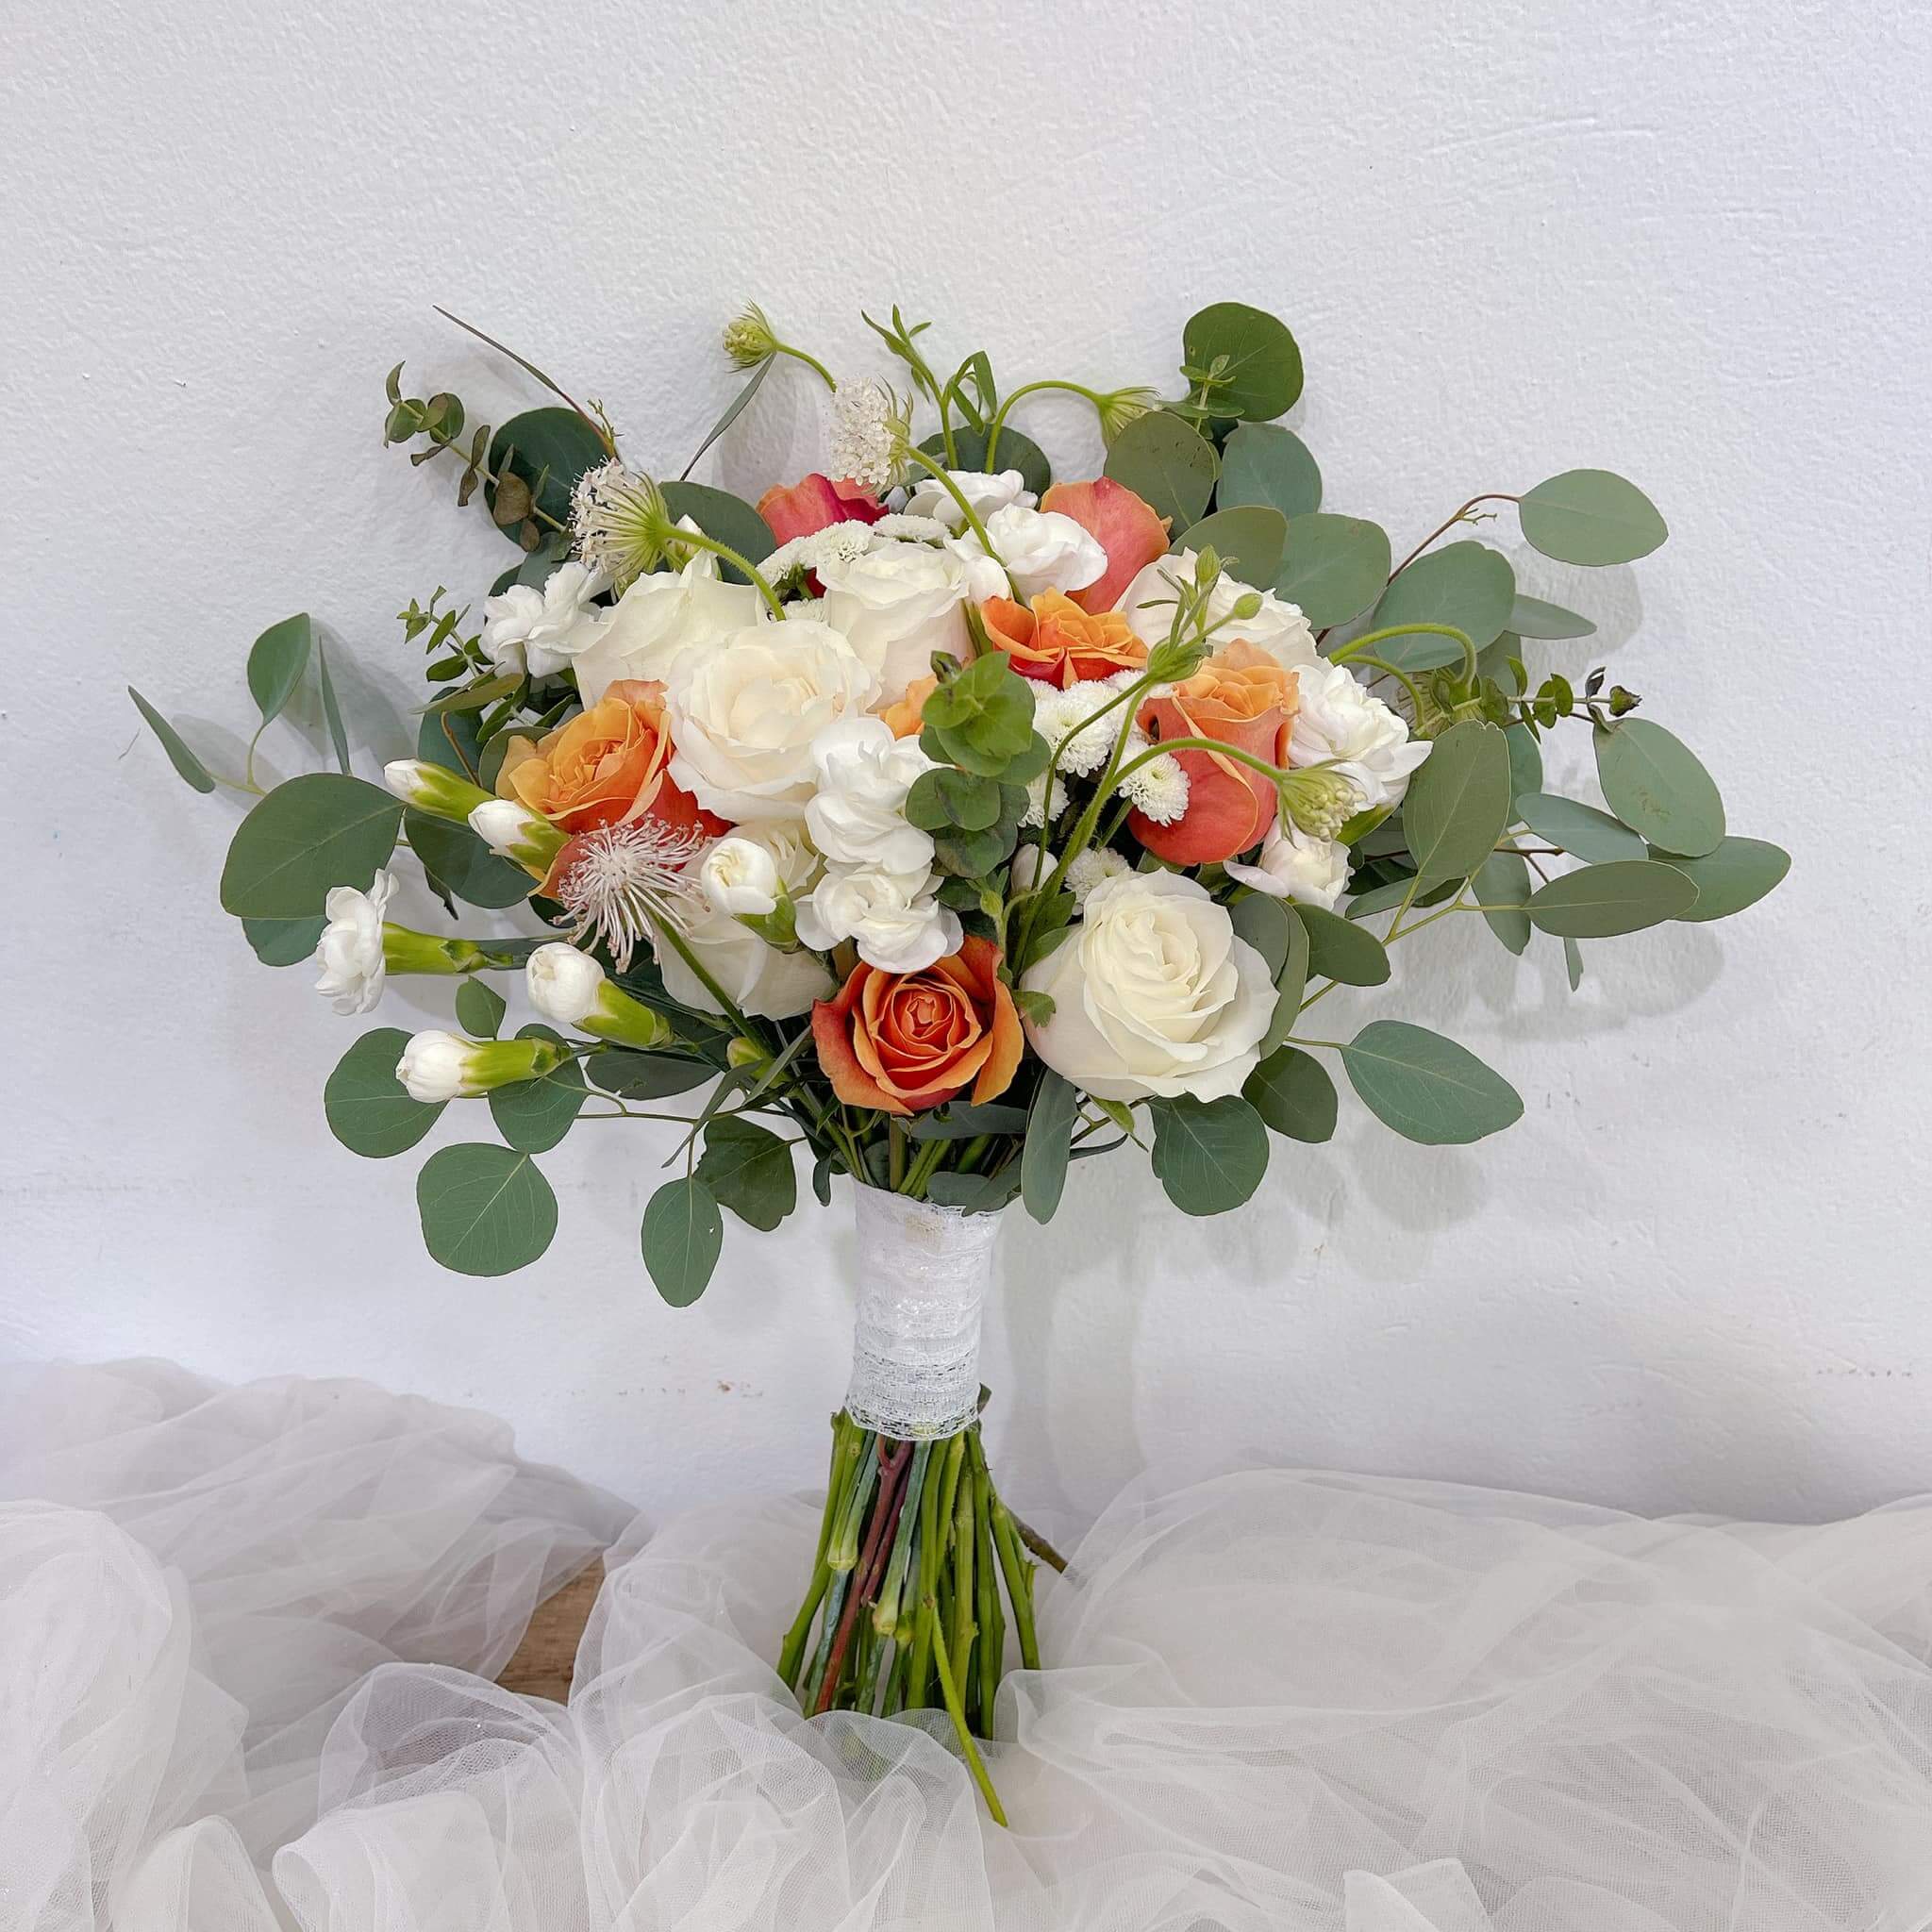 Địa chỉ làm hoa cưới uy tín tại Bình Dương - Shop hoa cưới Bình Dương